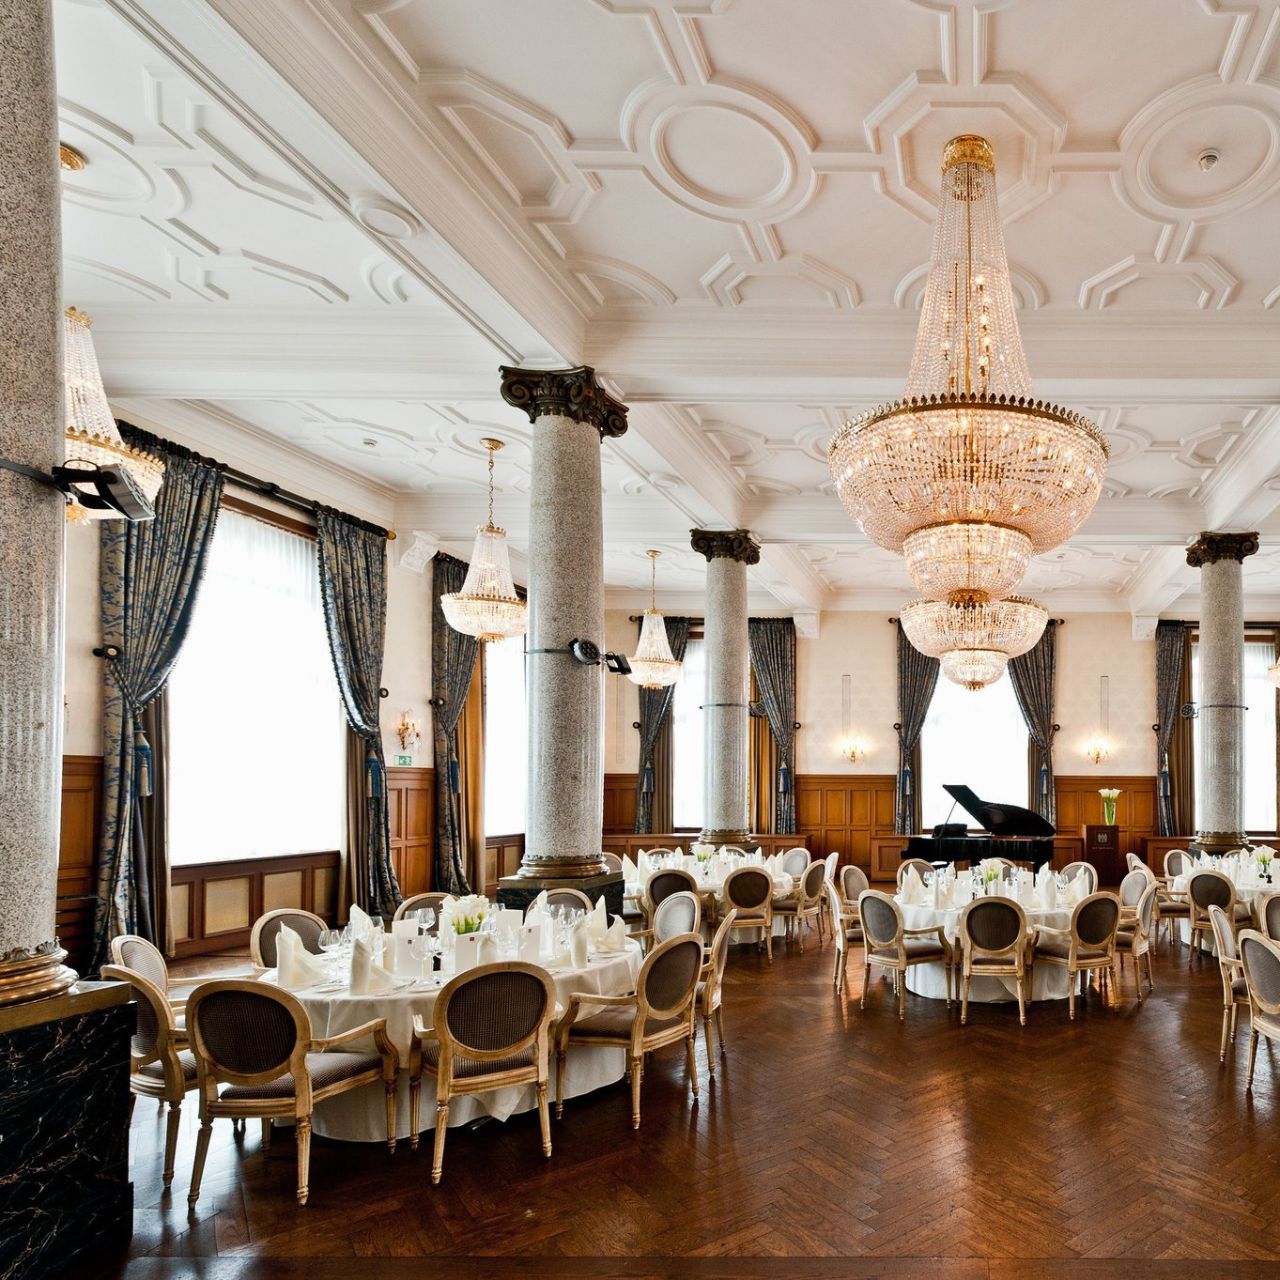 Les Trois Rois Grand Hotel - Bâle - HOTEL INFO